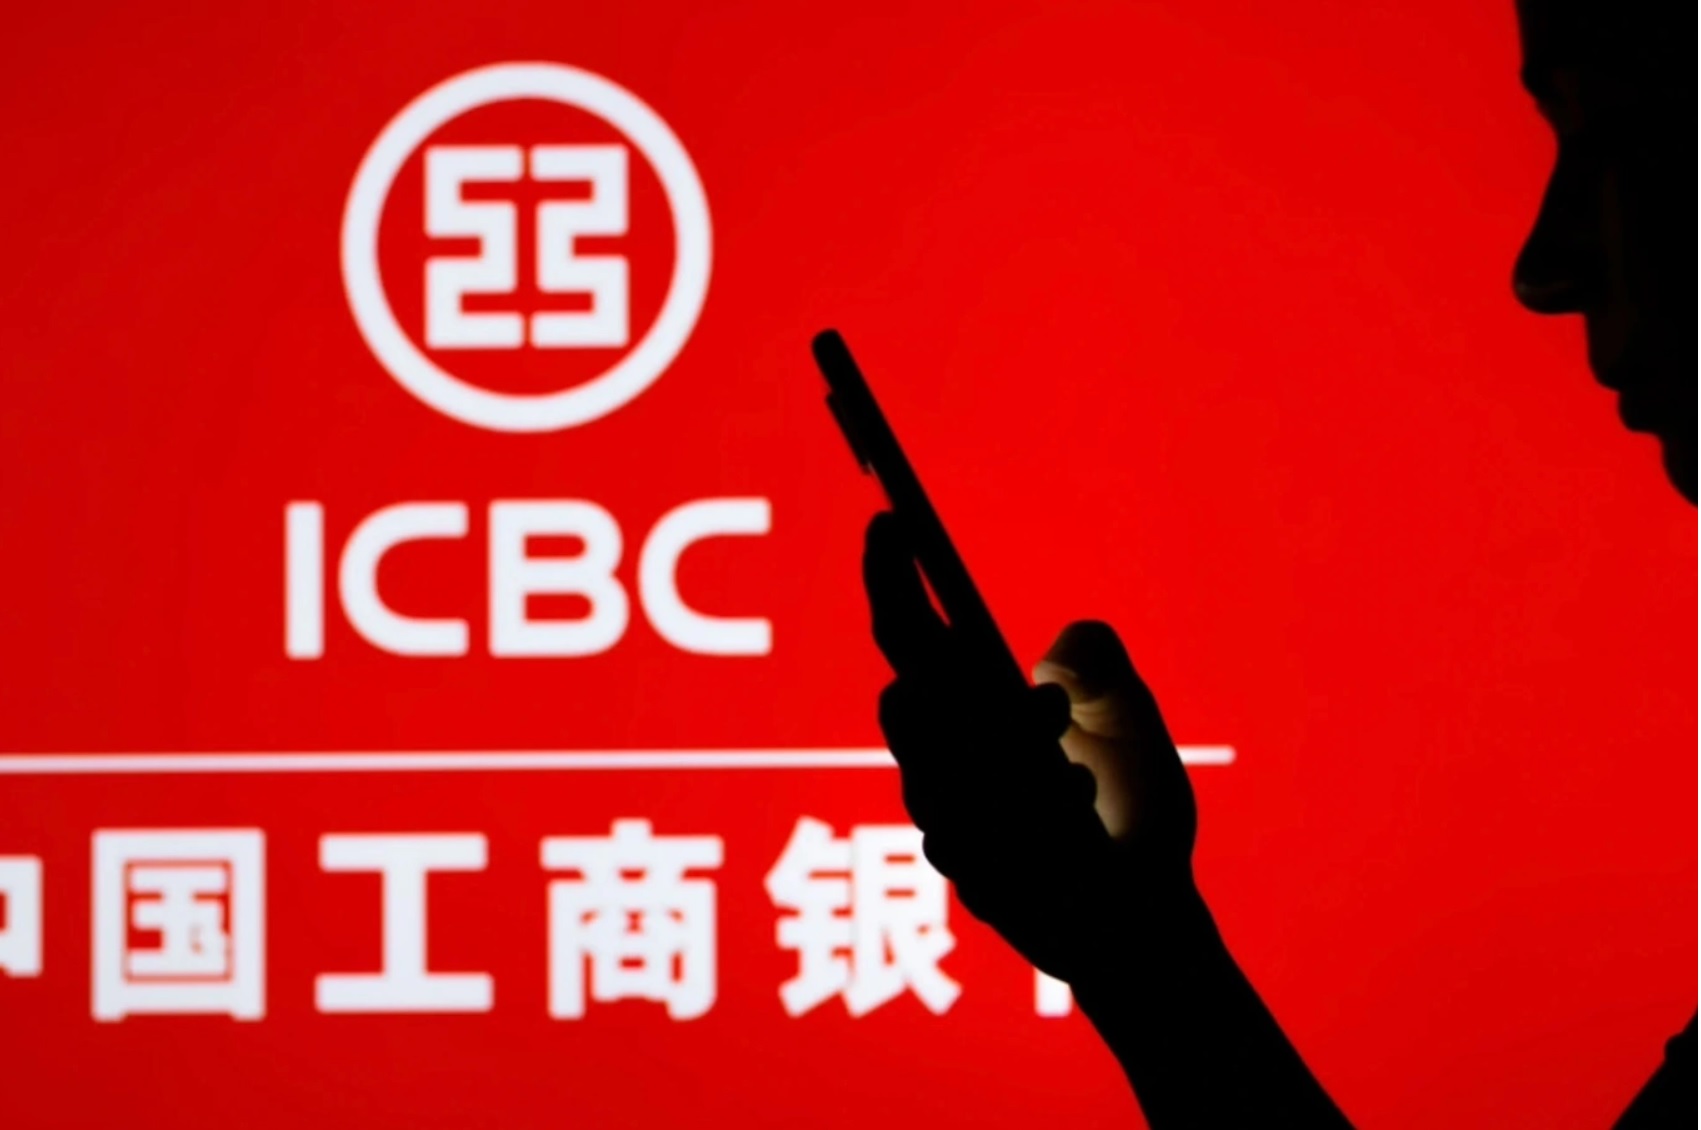 ICBC vừa bị hacker tấn công, khiến ngân hàng lớn nhất thế giới phải xử lý các giao dịch bằng USB (Ảnh: Cyber News).